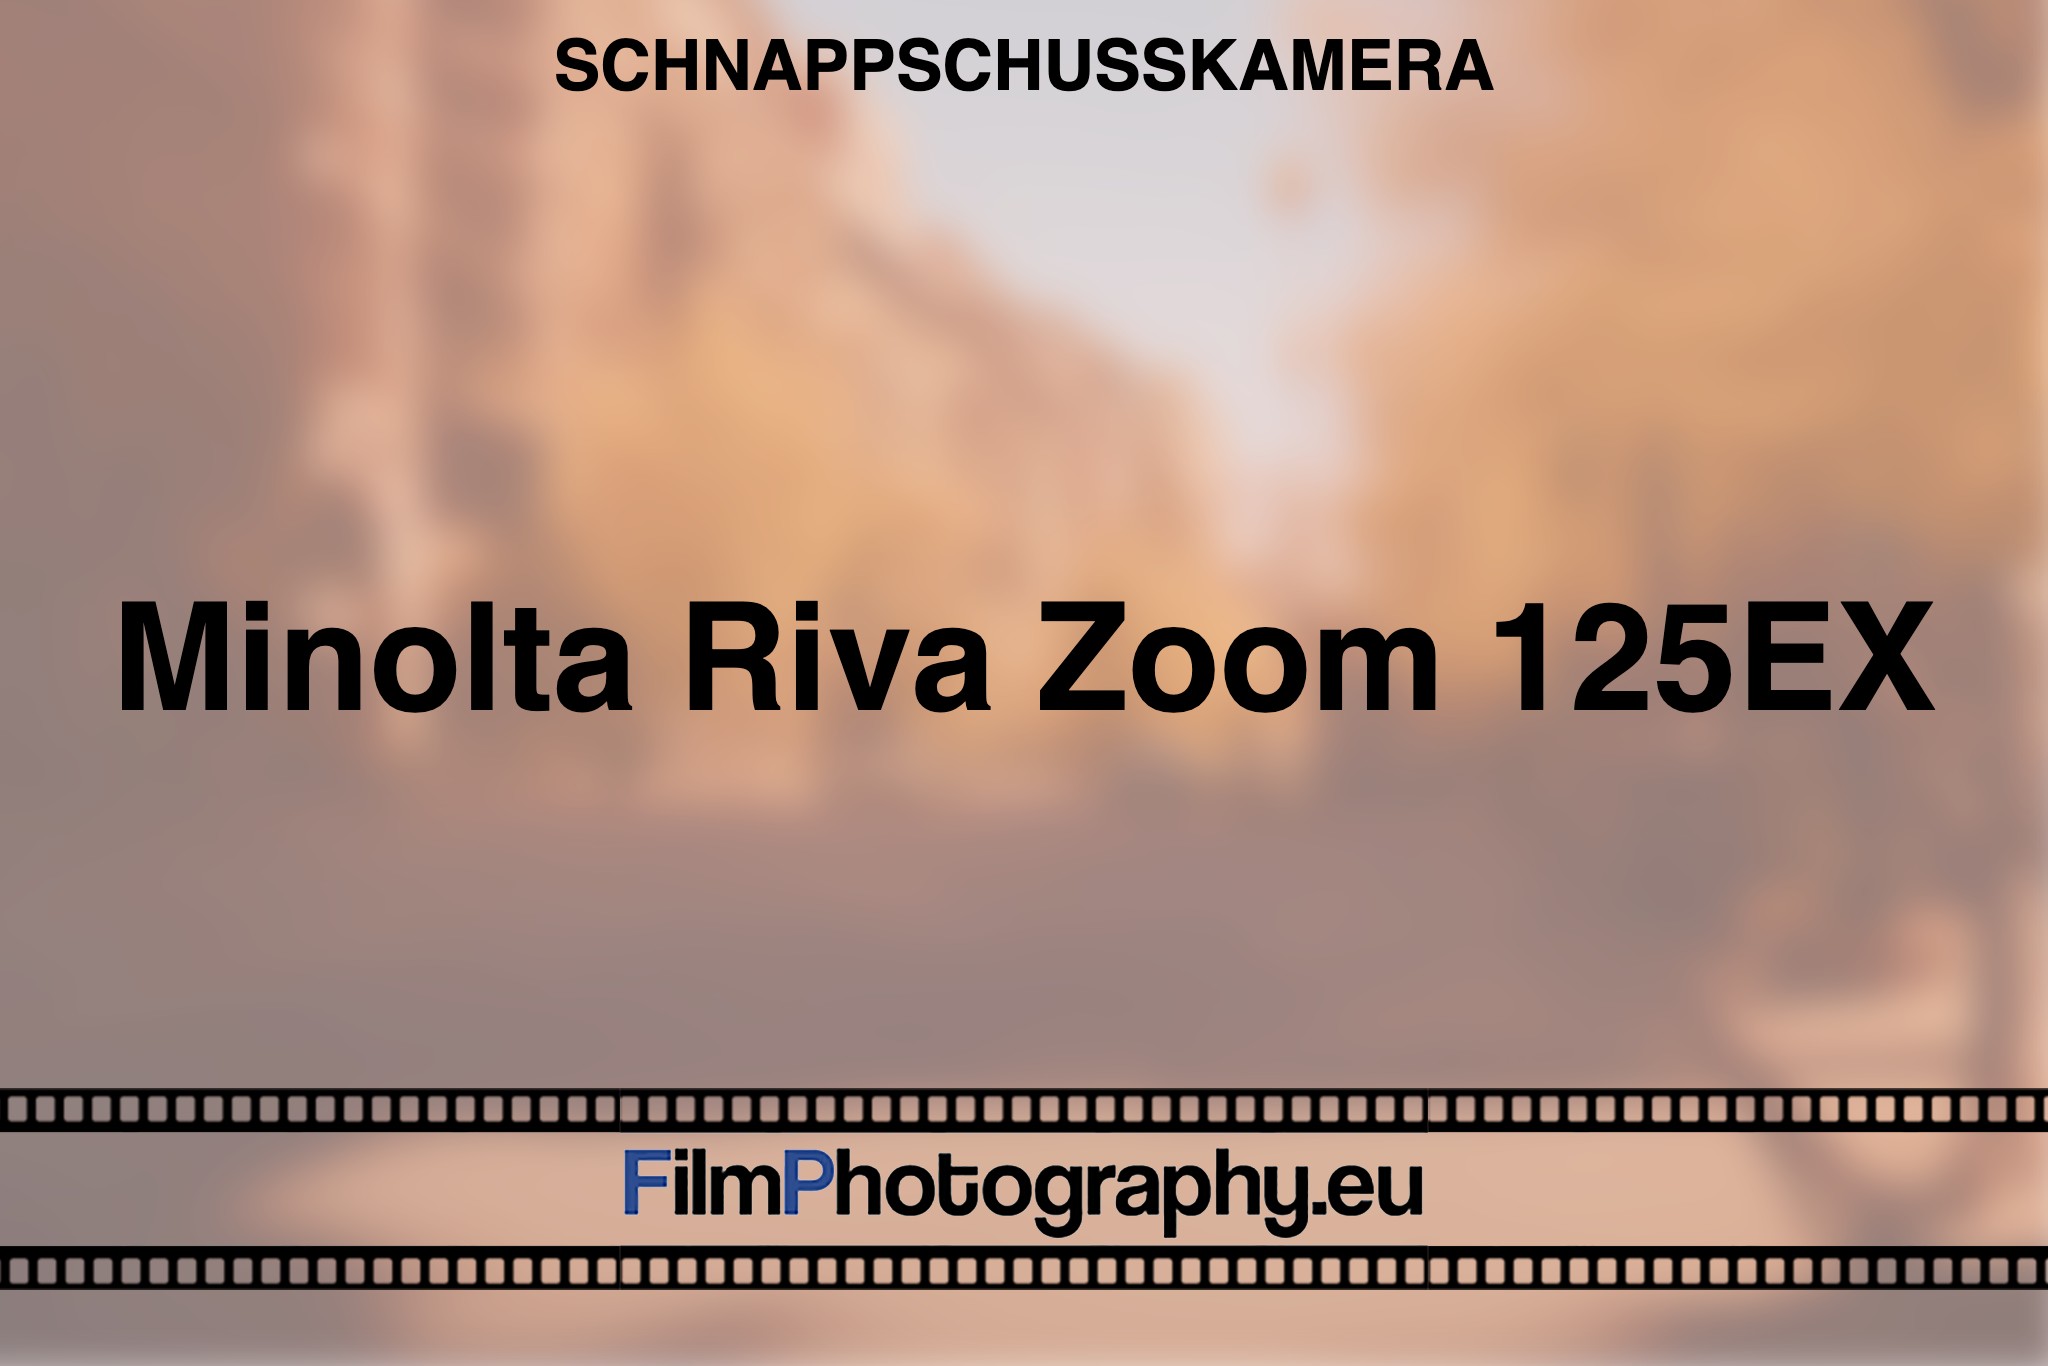 minolta-riva-zoom-125ex-schnappschusskamera-bnv